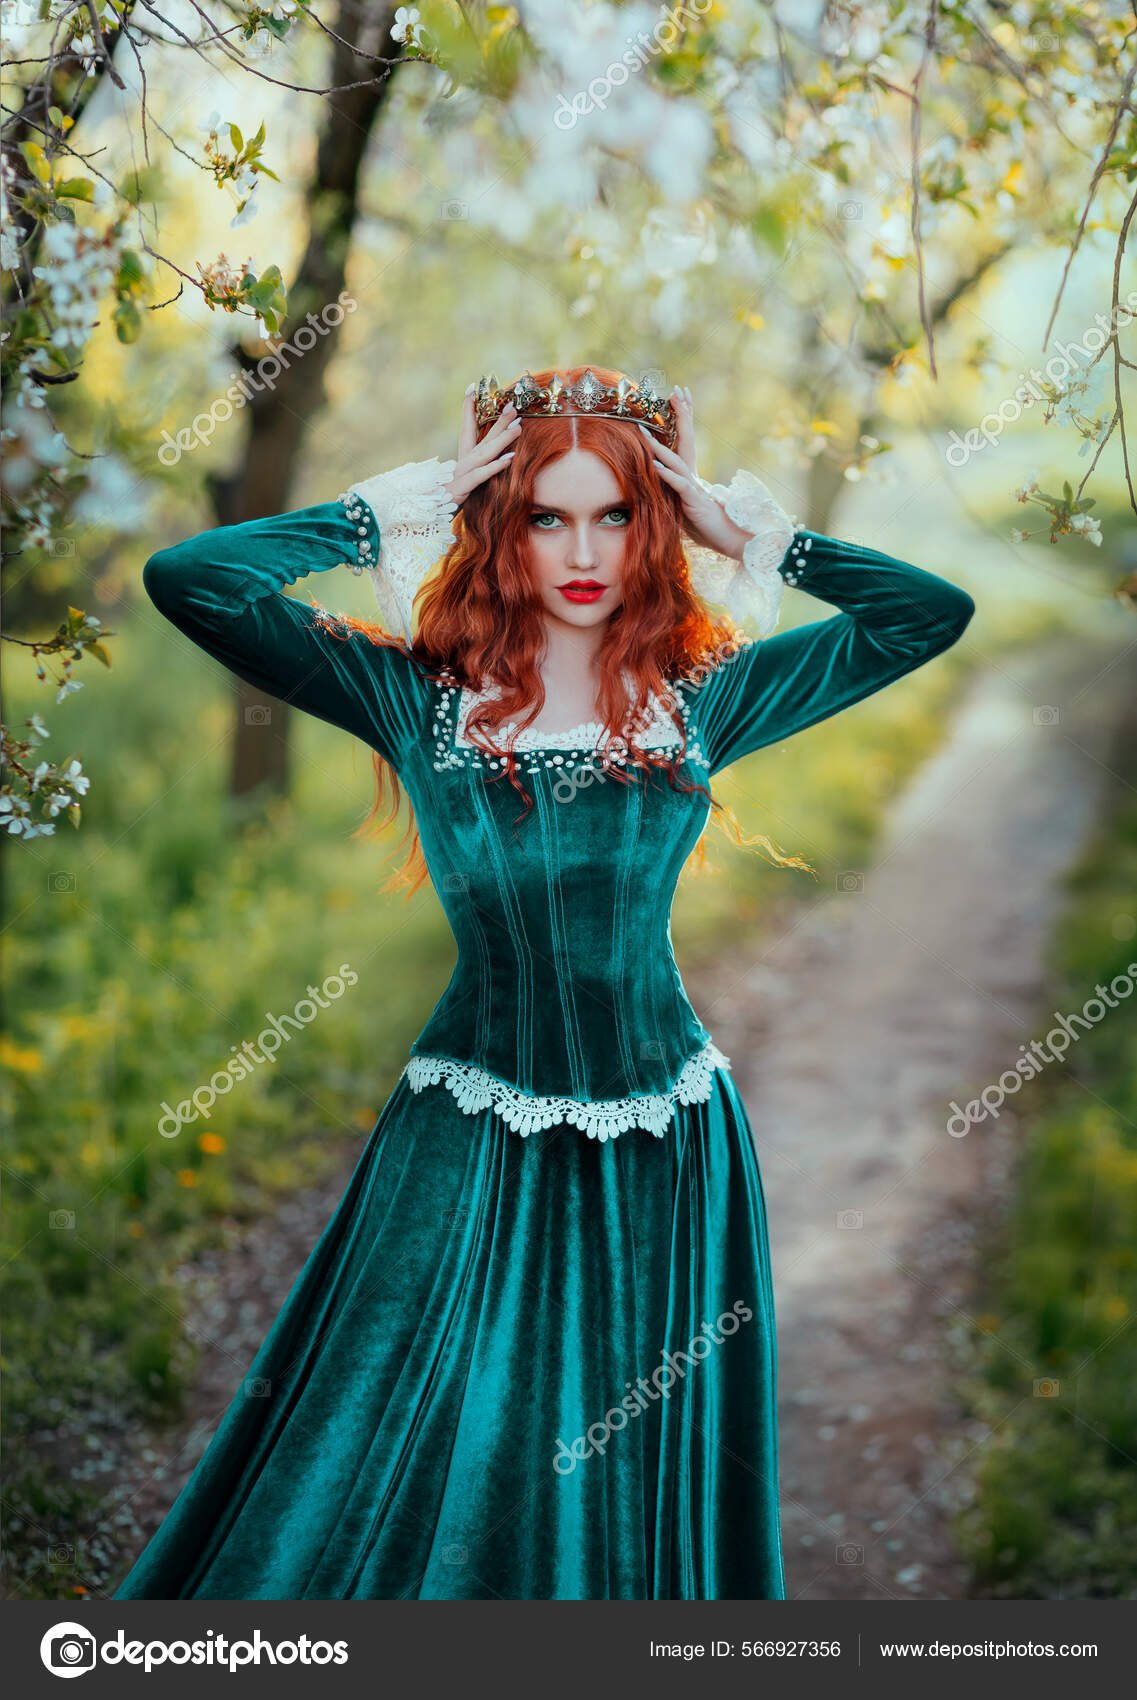 Disfraz de Dama Medieval Verde para mujer